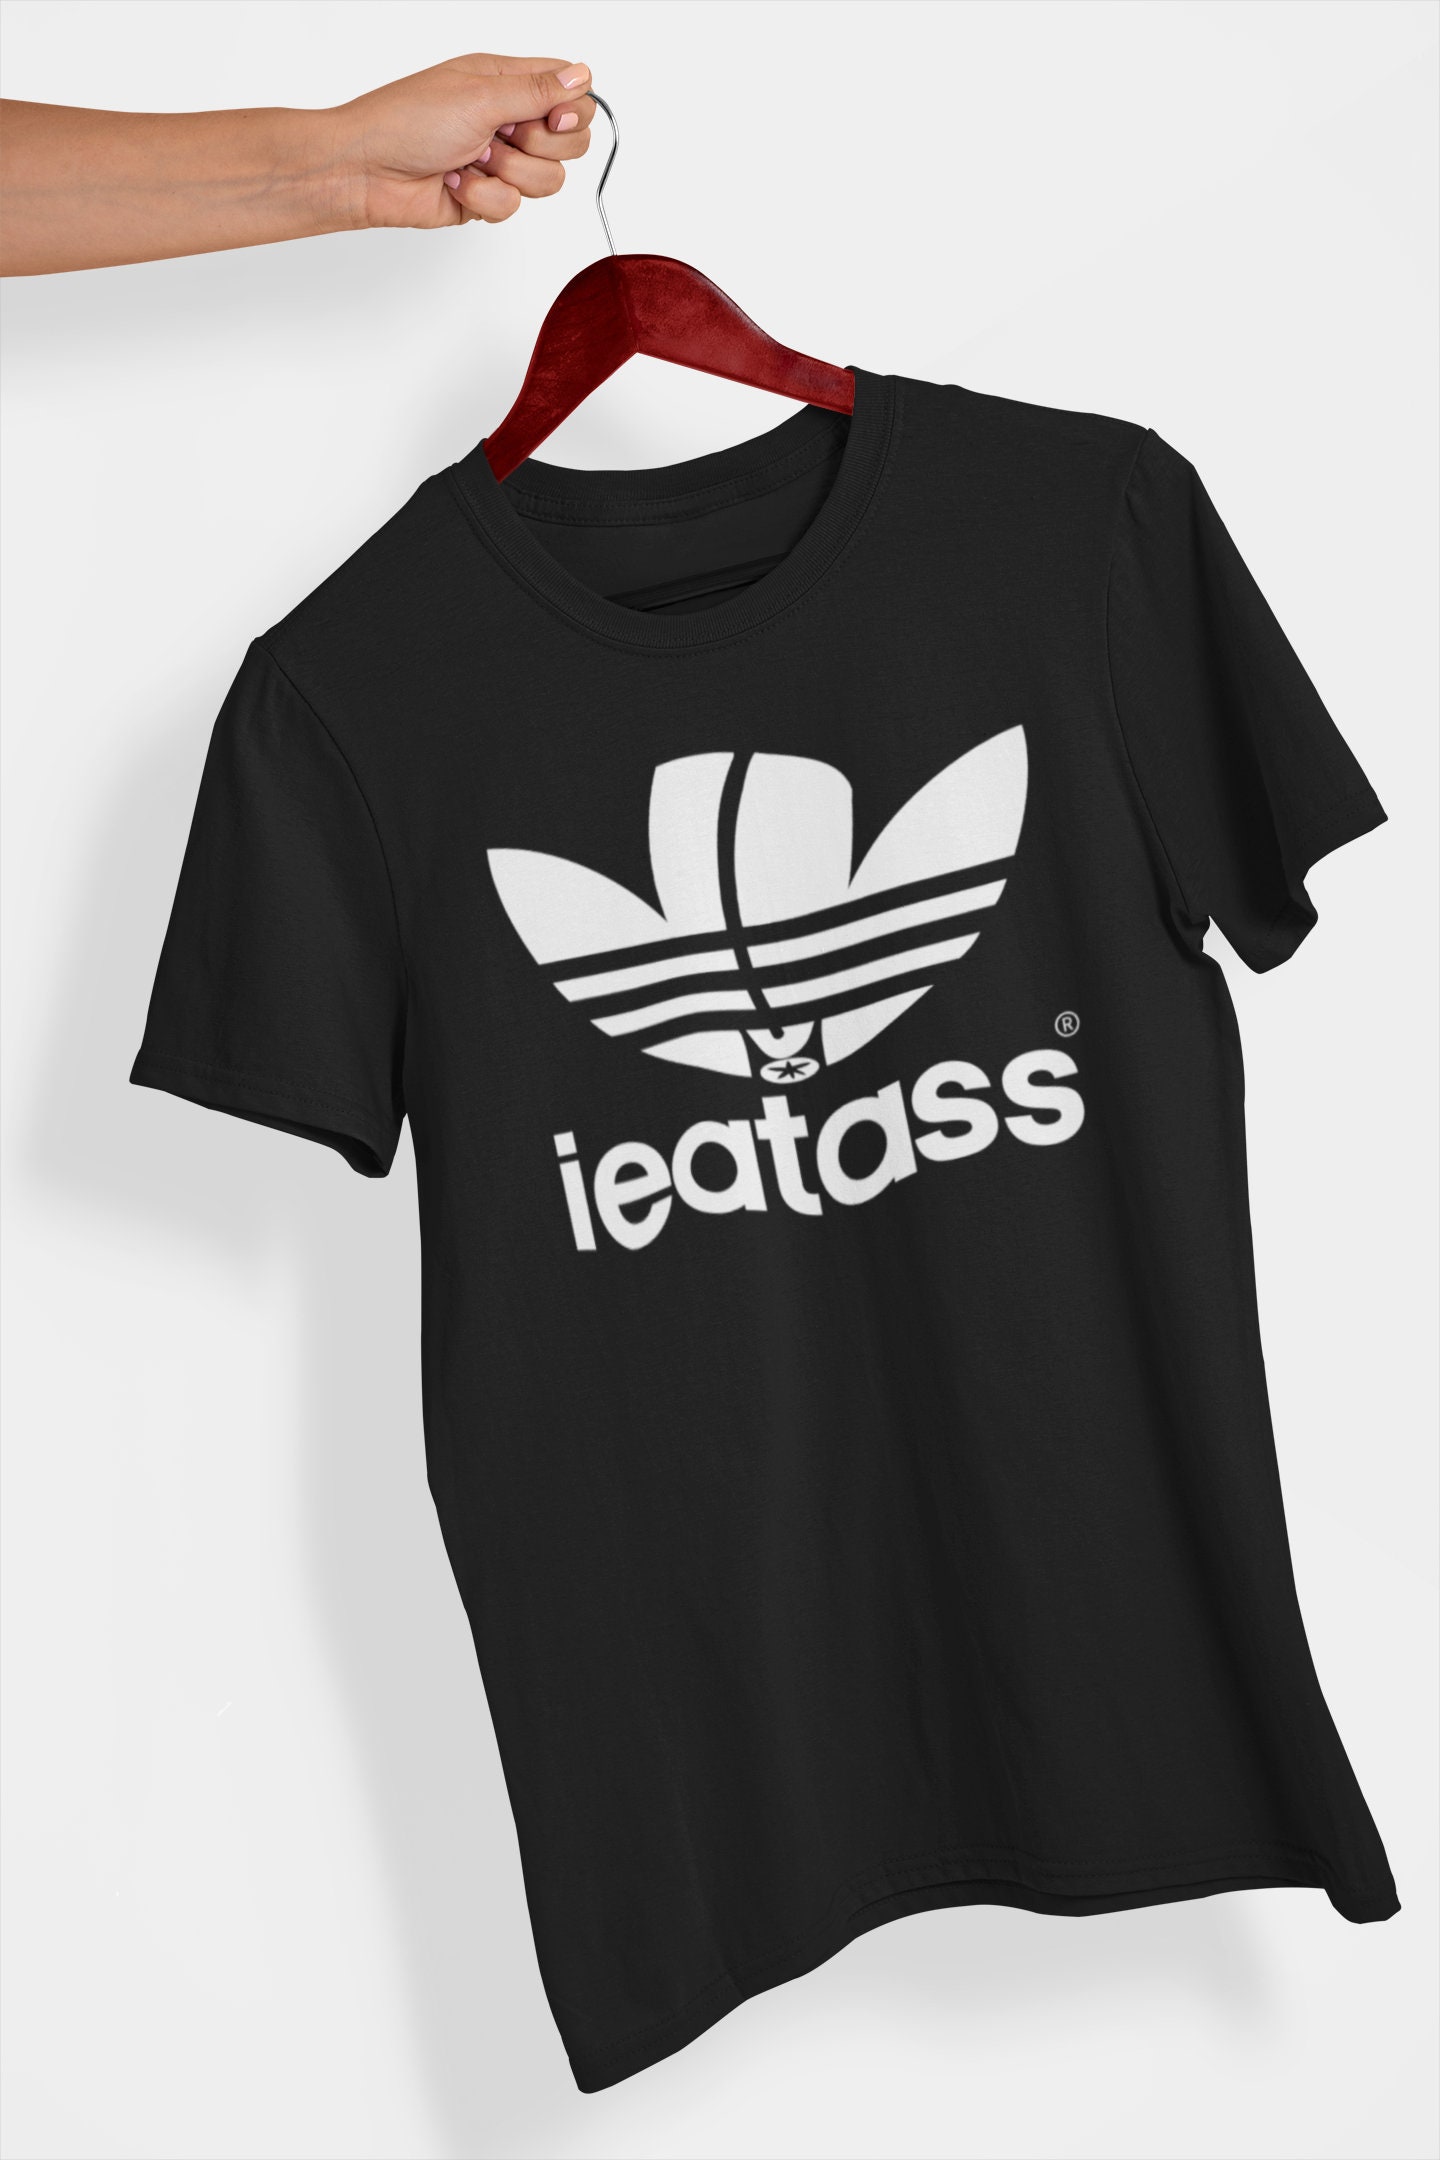 Buy Eat Ass Shirt Logo Gay Shirt LGBT Dirty Gay in India - Etsy